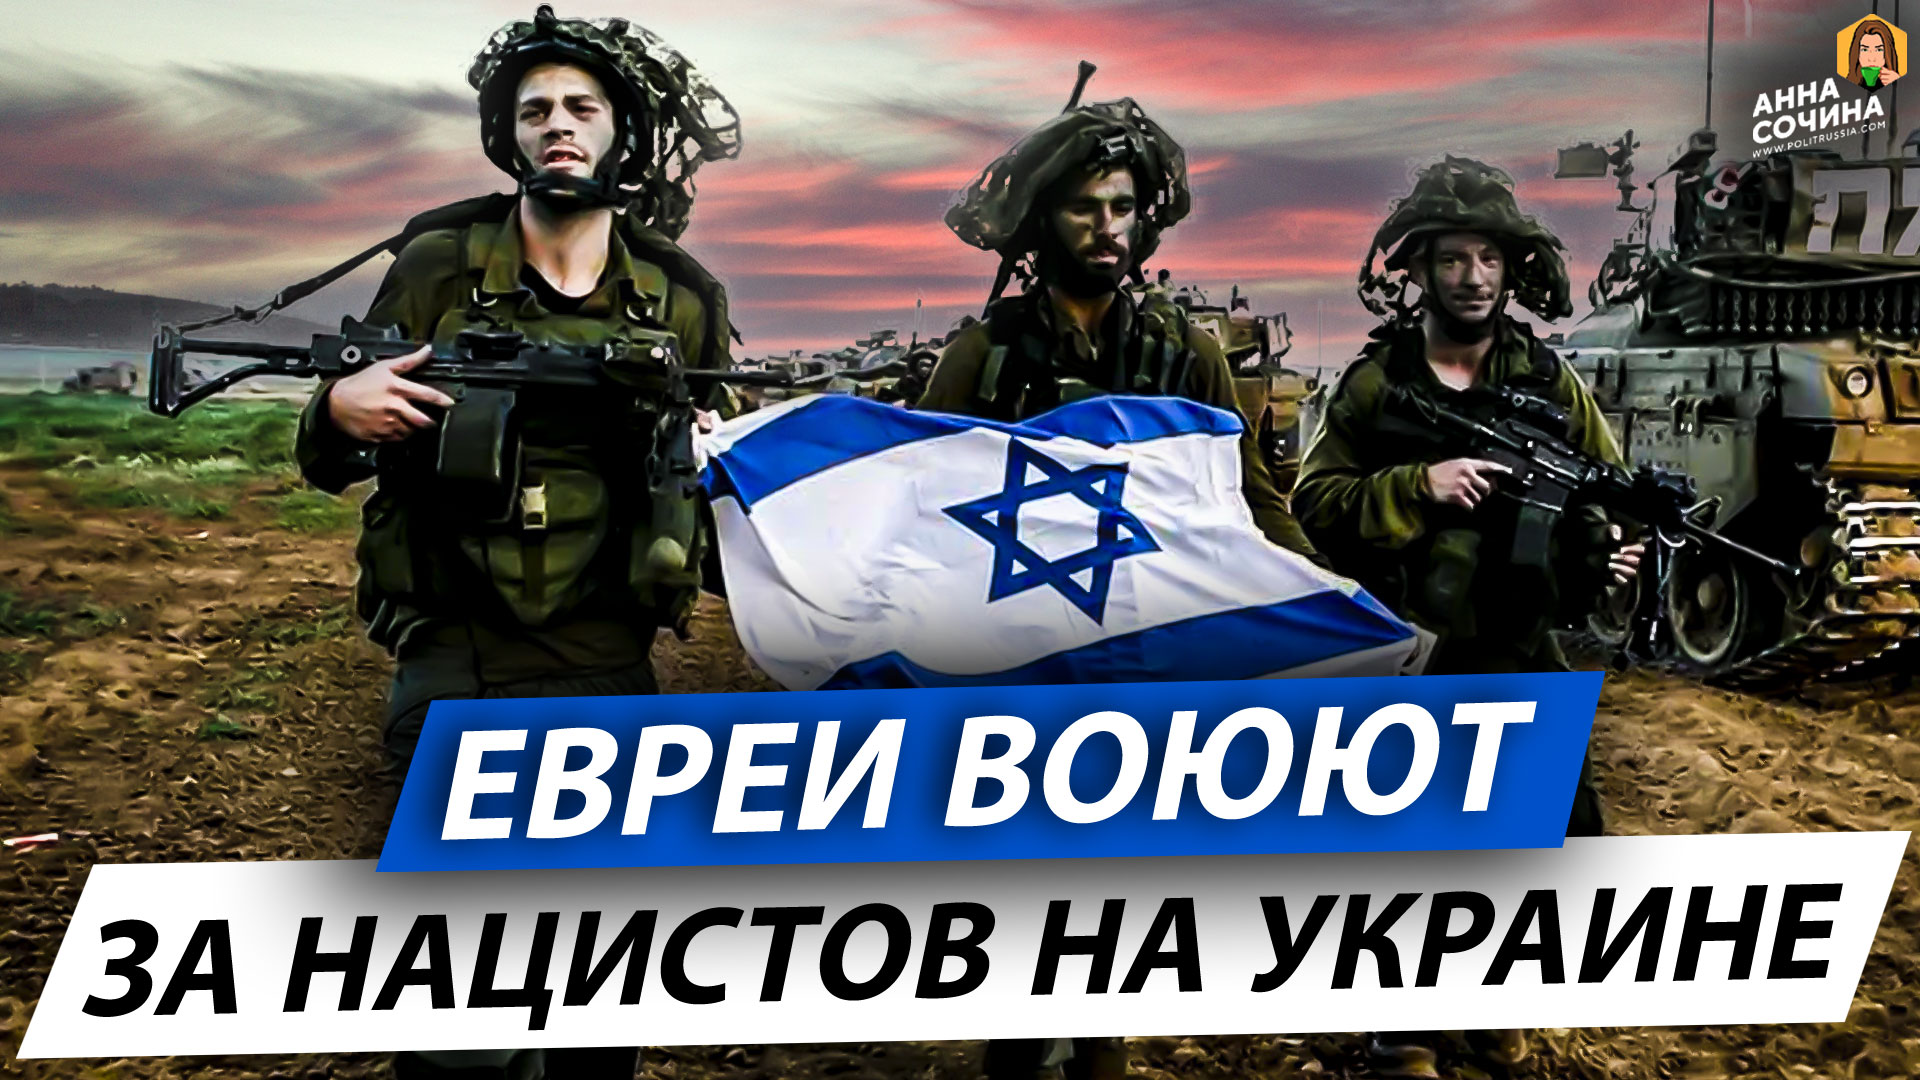 Евреи воюют за нацистов на Украине (Анна Сочина)